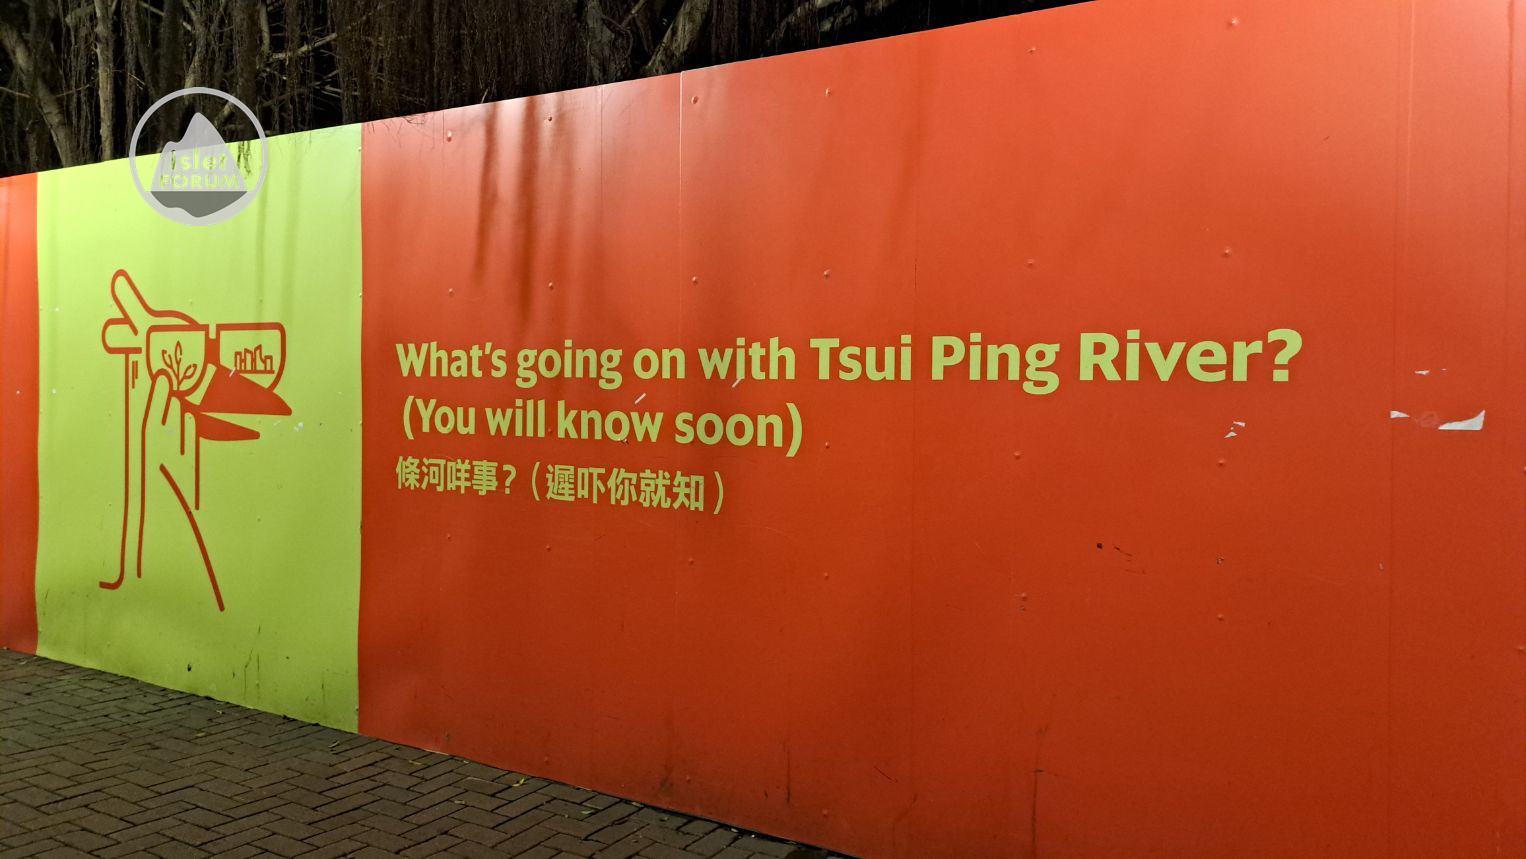 翠屏河。活化 Tsui Ping River (5).jpg